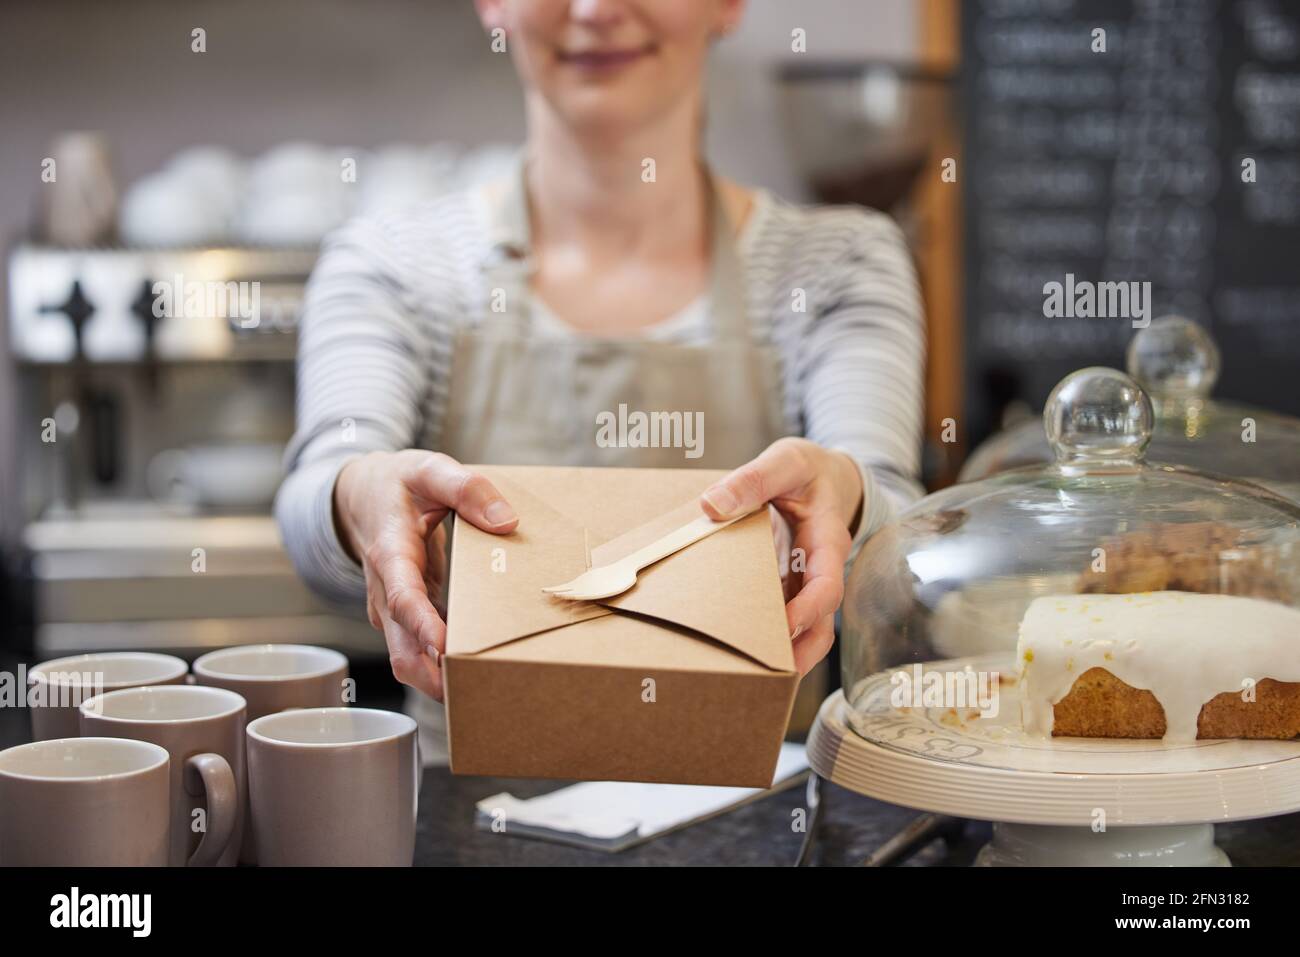 Primo piano di Female Worker al Cafe che serve pasti in Imballaggio sostenibile riciclabile con forchetta in legno Foto Stock